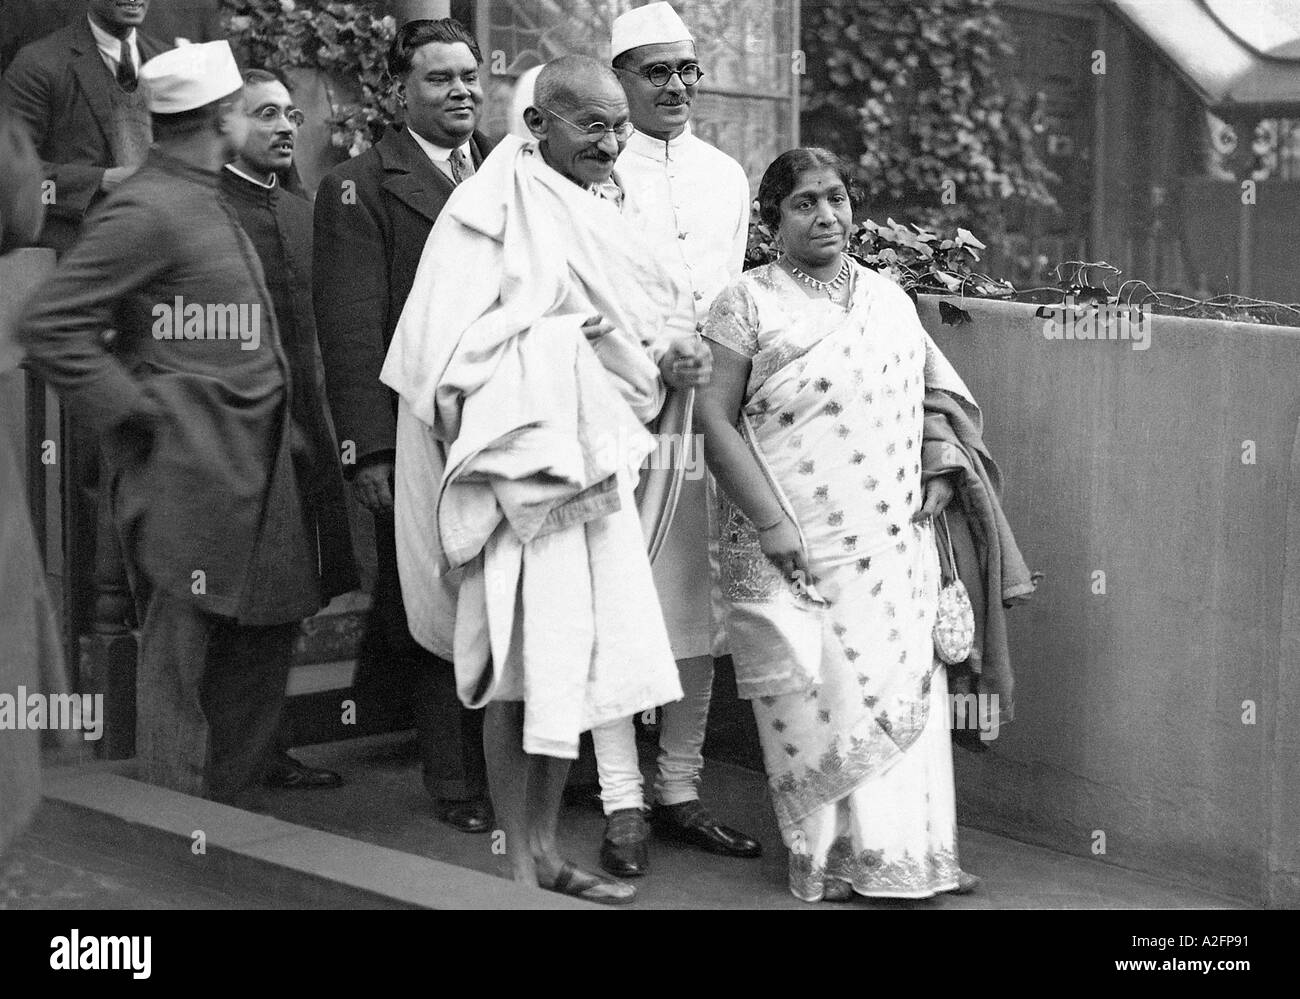 Mahatma Gandhi et Sarojini Naidu vont rencontrer le roi George V au Palais de Buckingham, Londres, Angleterre, Royaume-Uni, 11 novembre, 1931, ancien millésime 1900s Banque D'Images